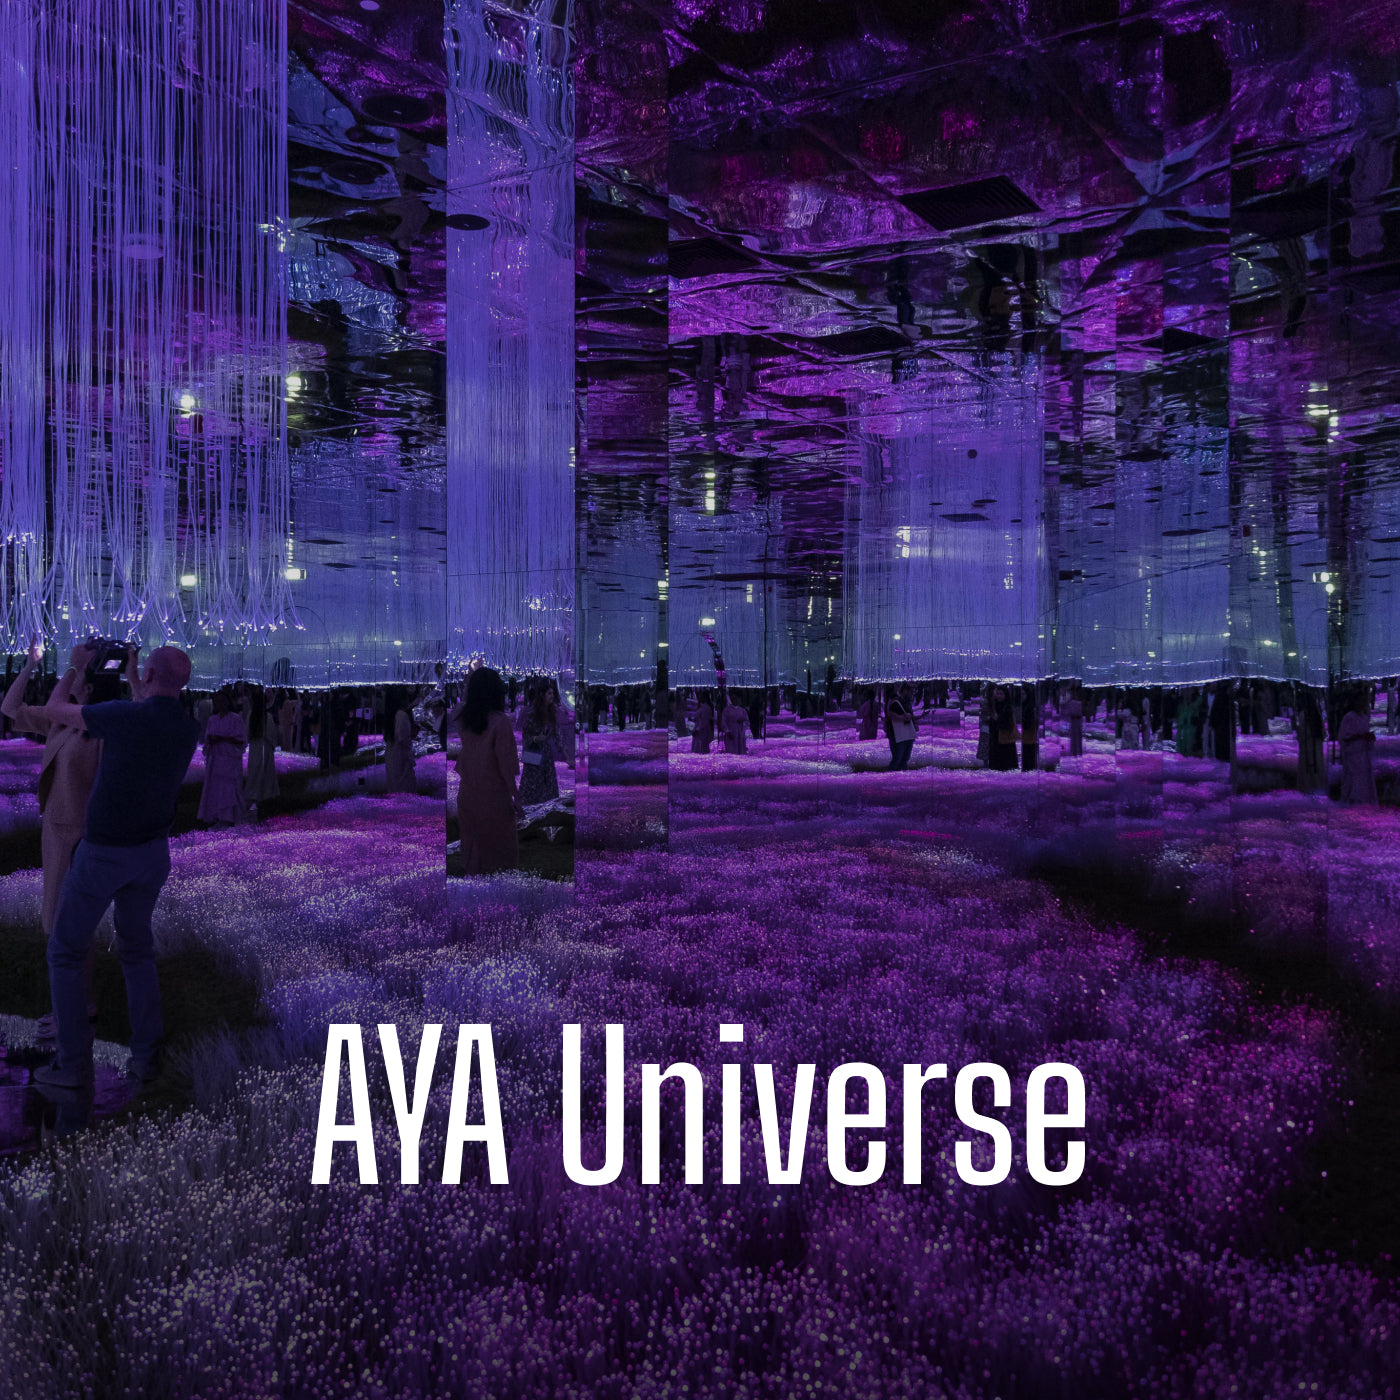 AYA Universe